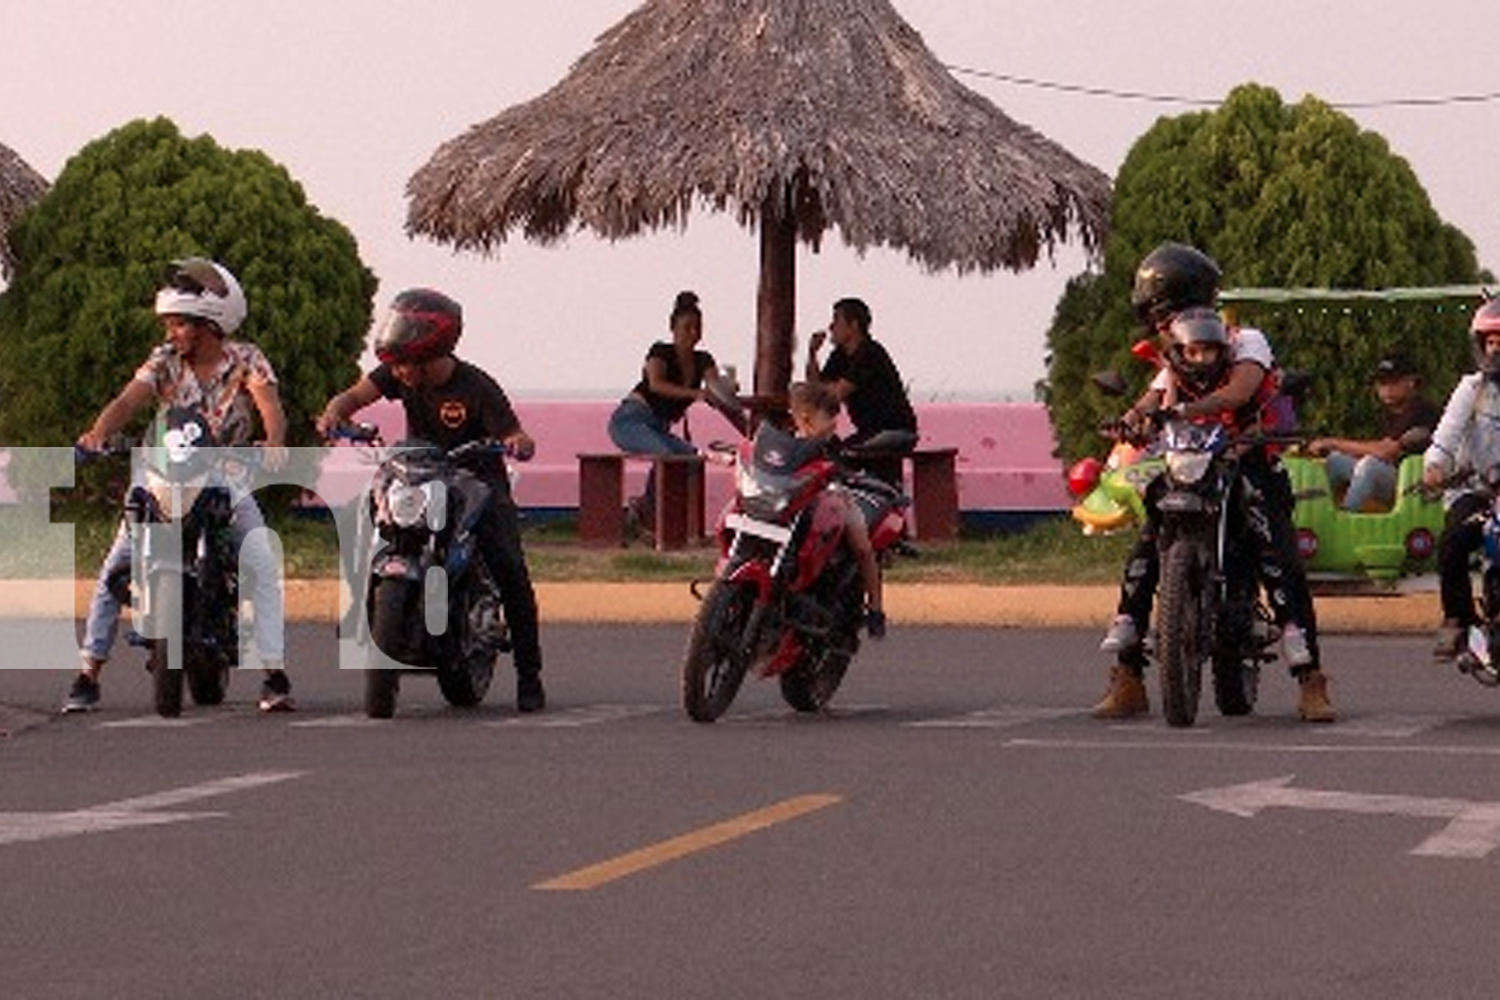 Foto: Adrenalina y diversión con el “Club Yamaha 505” en el Puerto Salvador Allende Managua/ TN8